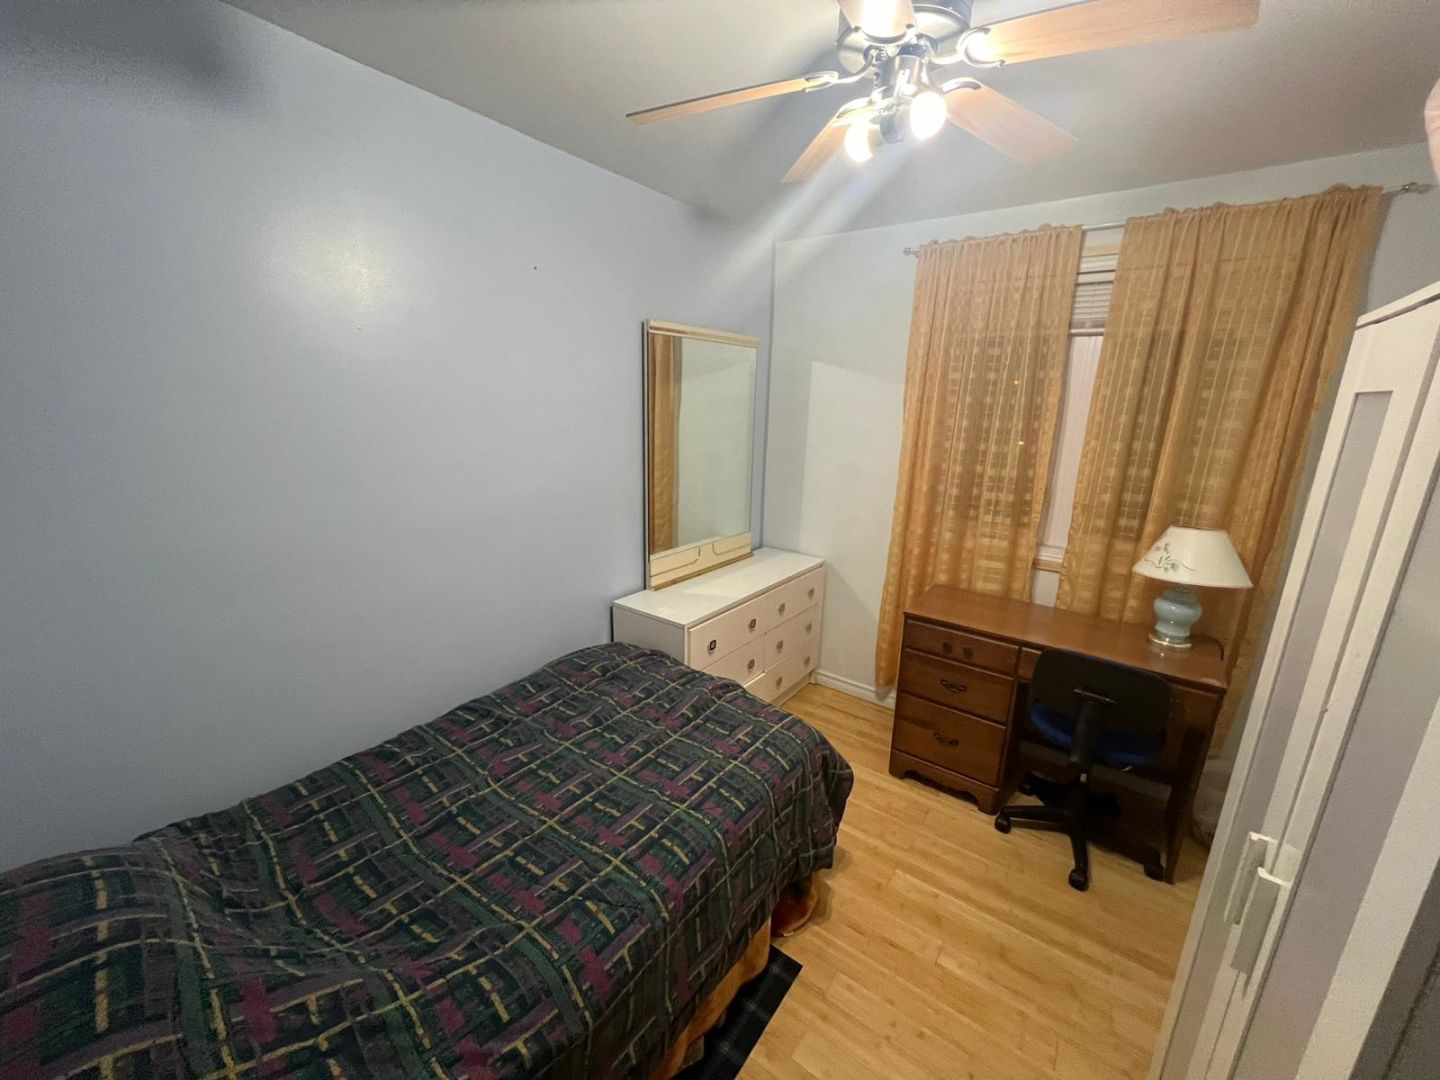 Comfort Homestay Room - Bison Dr, Toronto room for rent 38